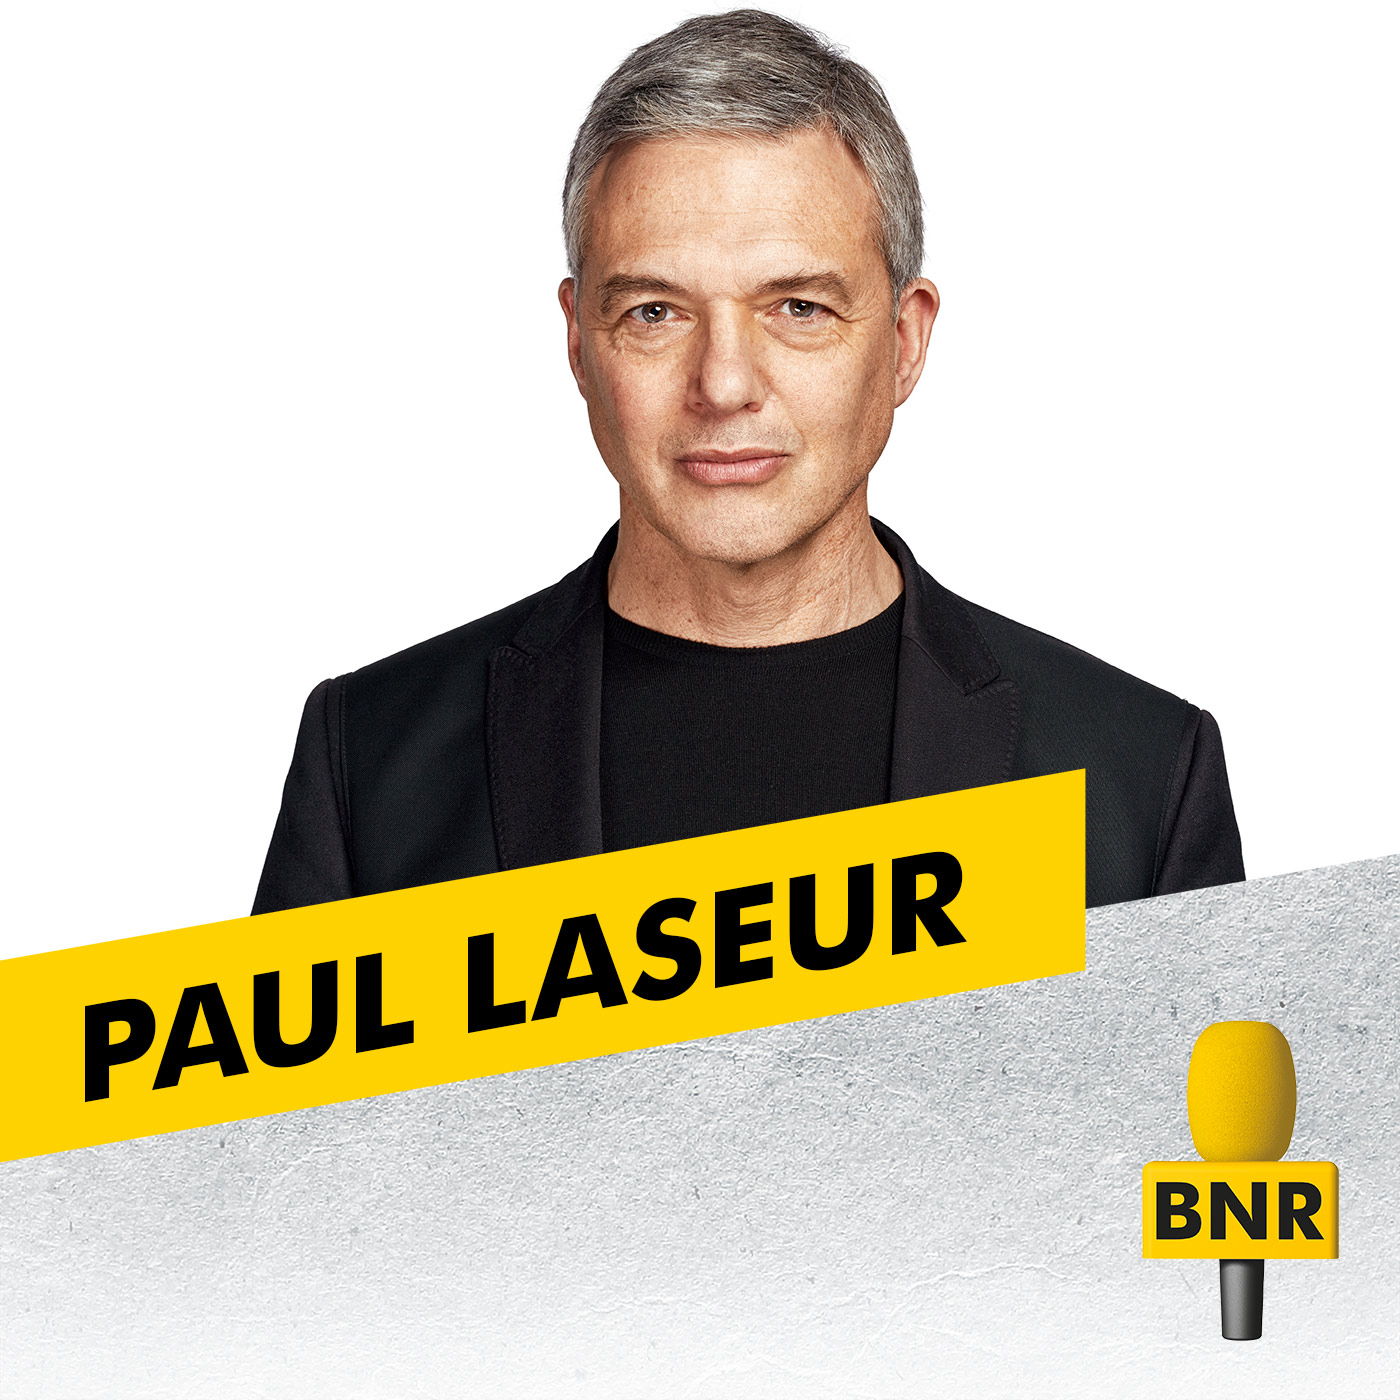 Paul Laseur